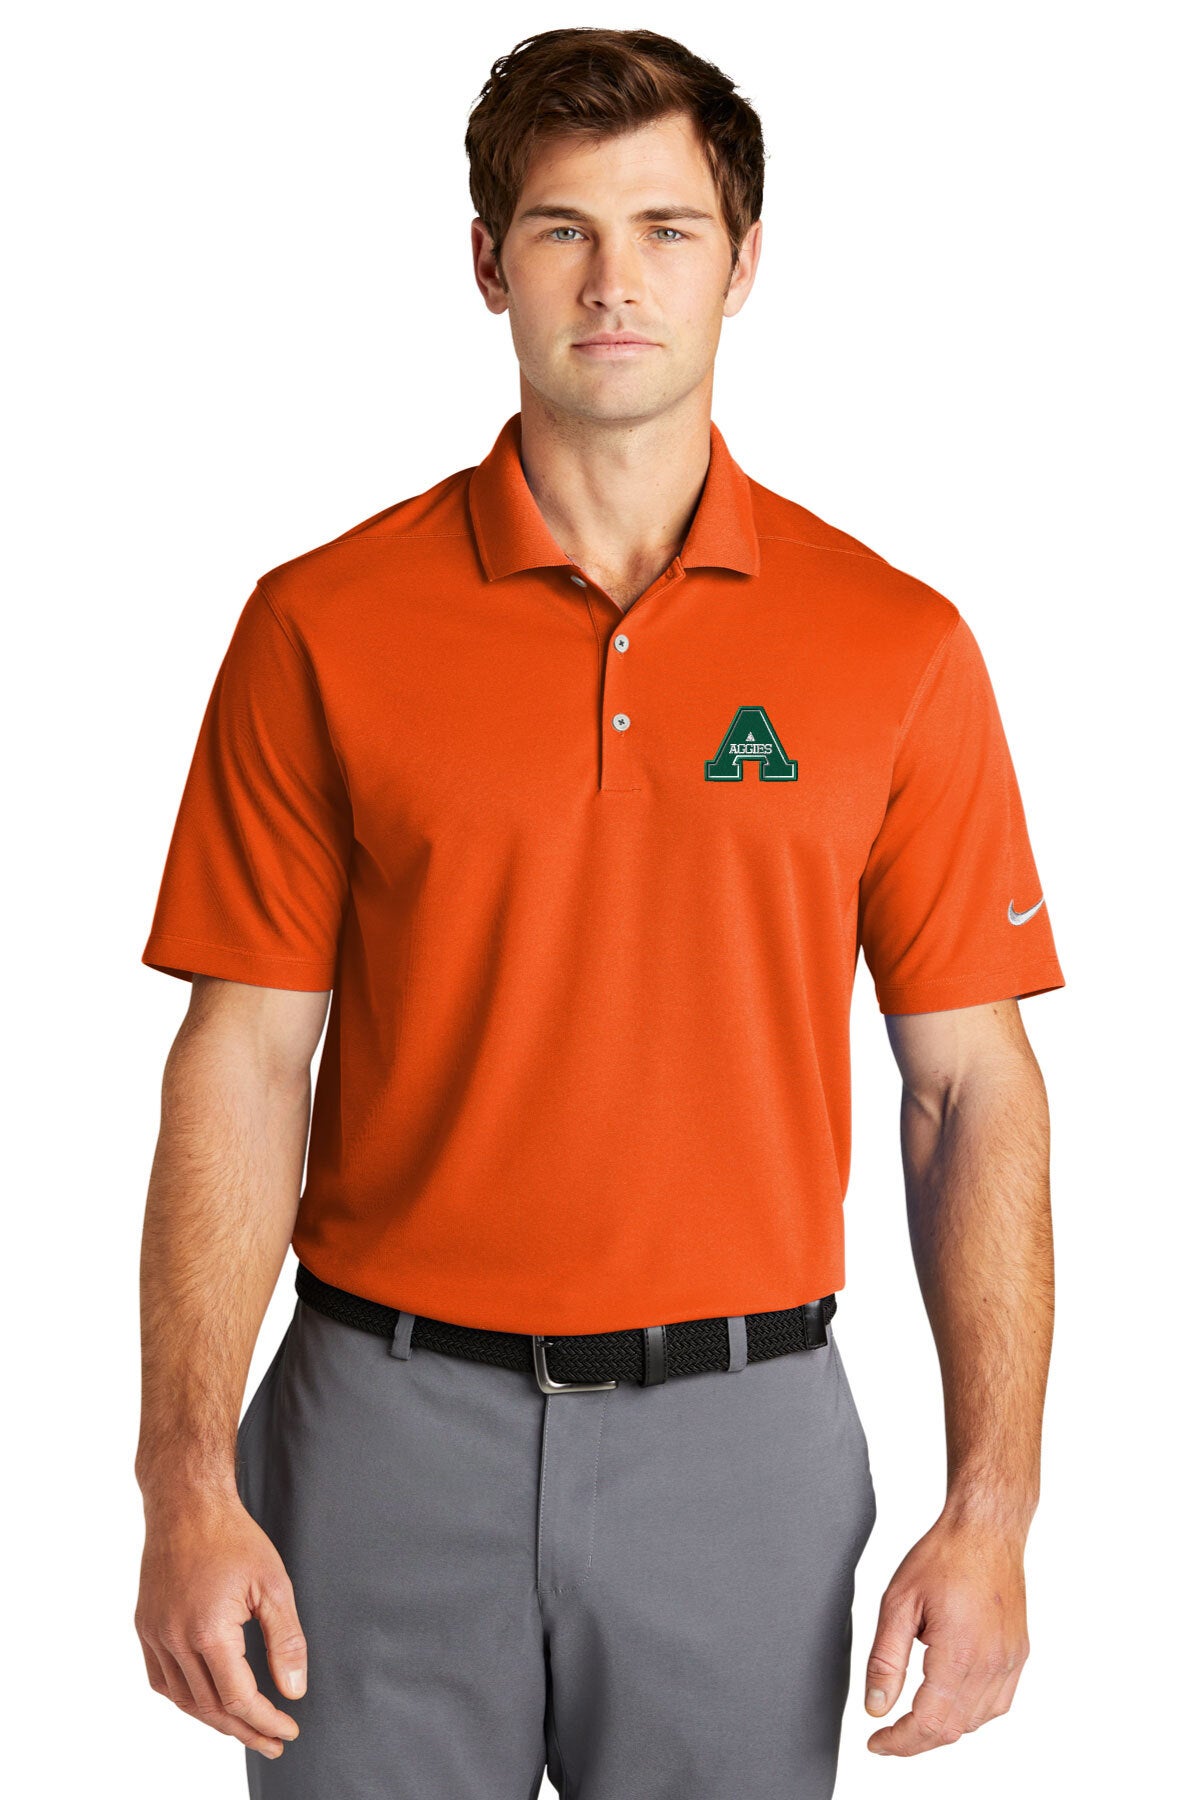 rams golf shirt